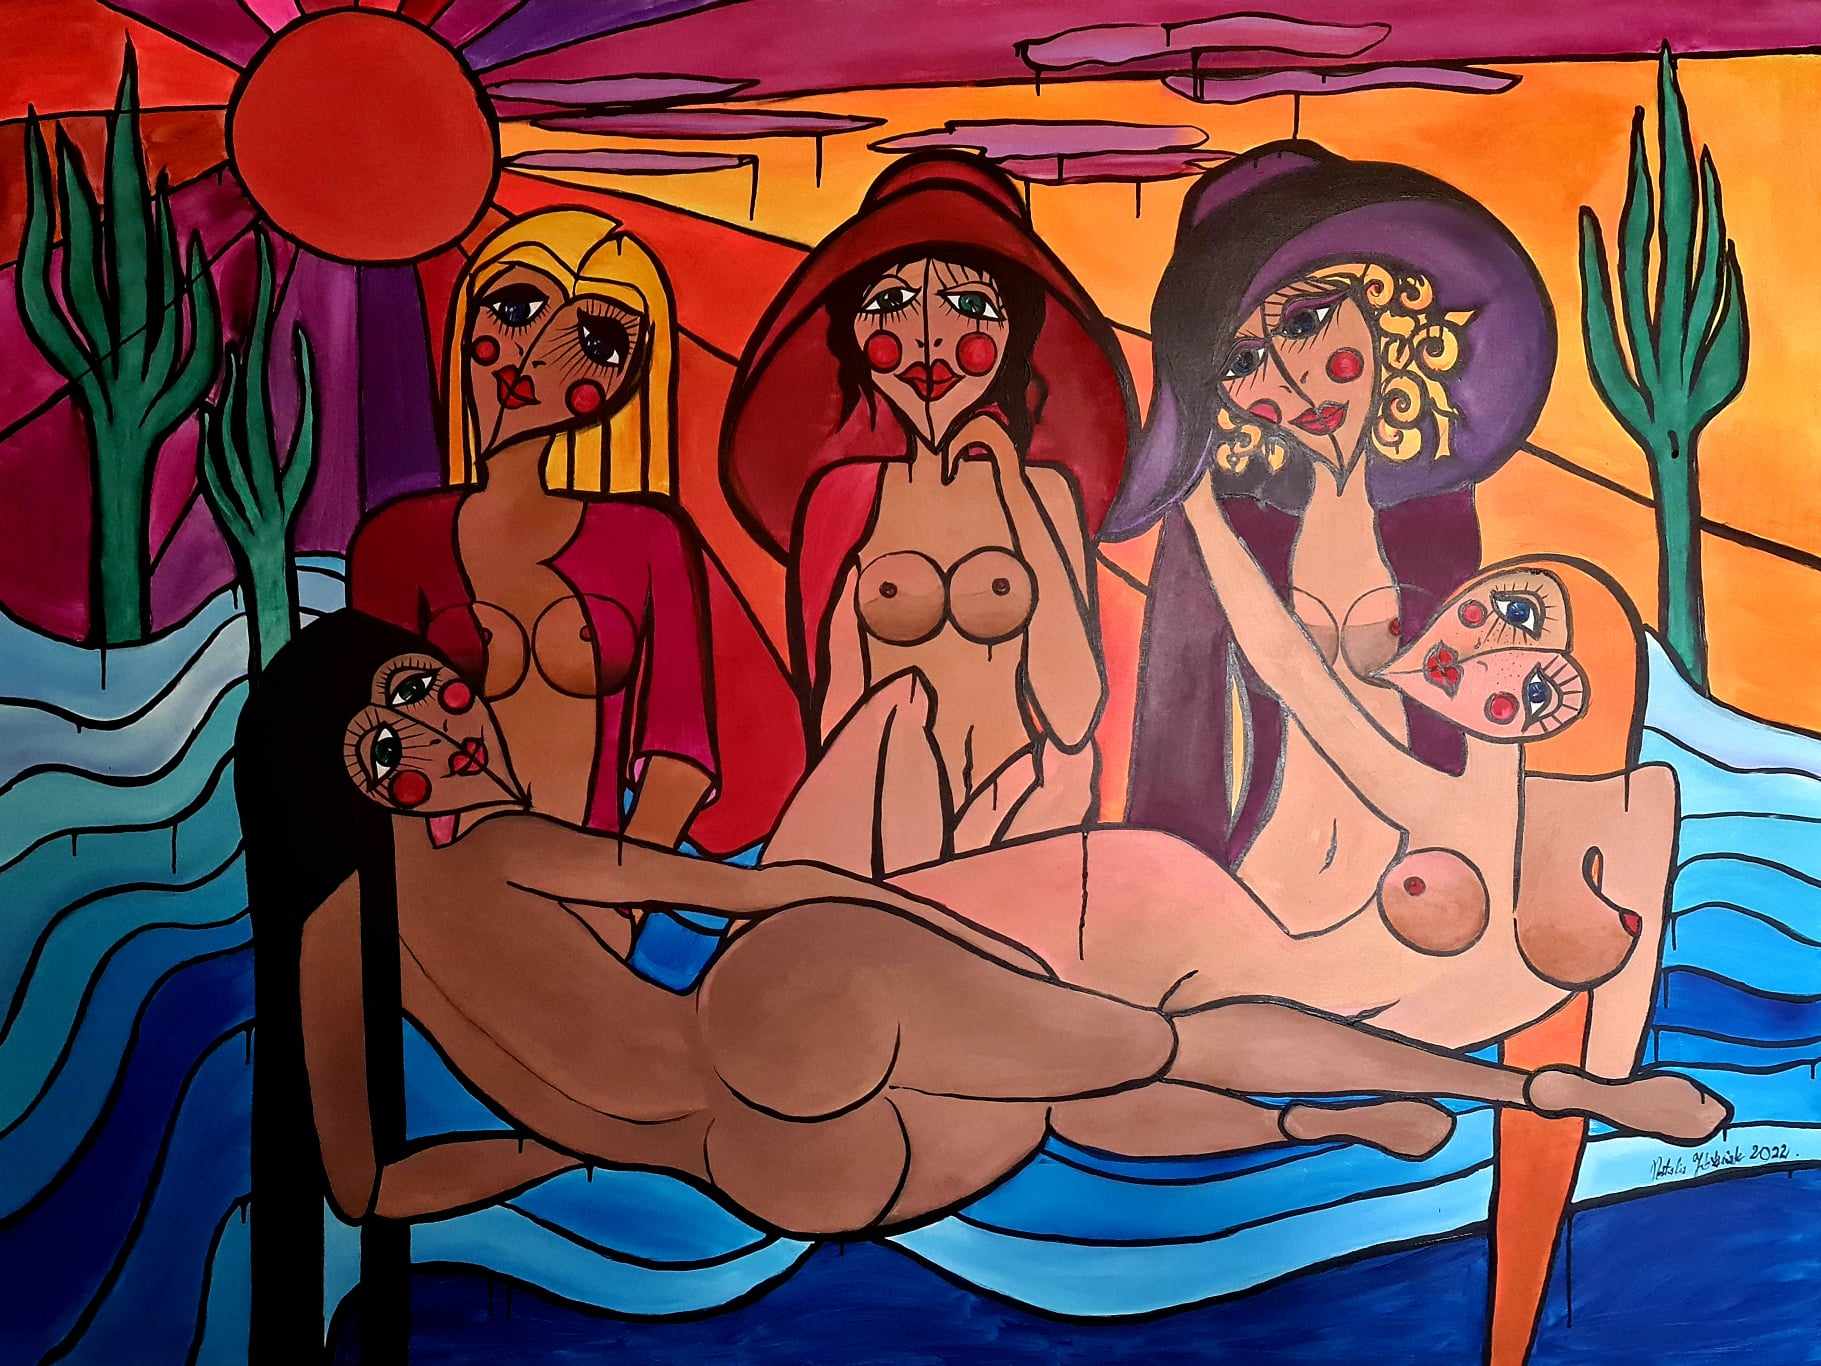 Pięć nagich kobiet na plaży